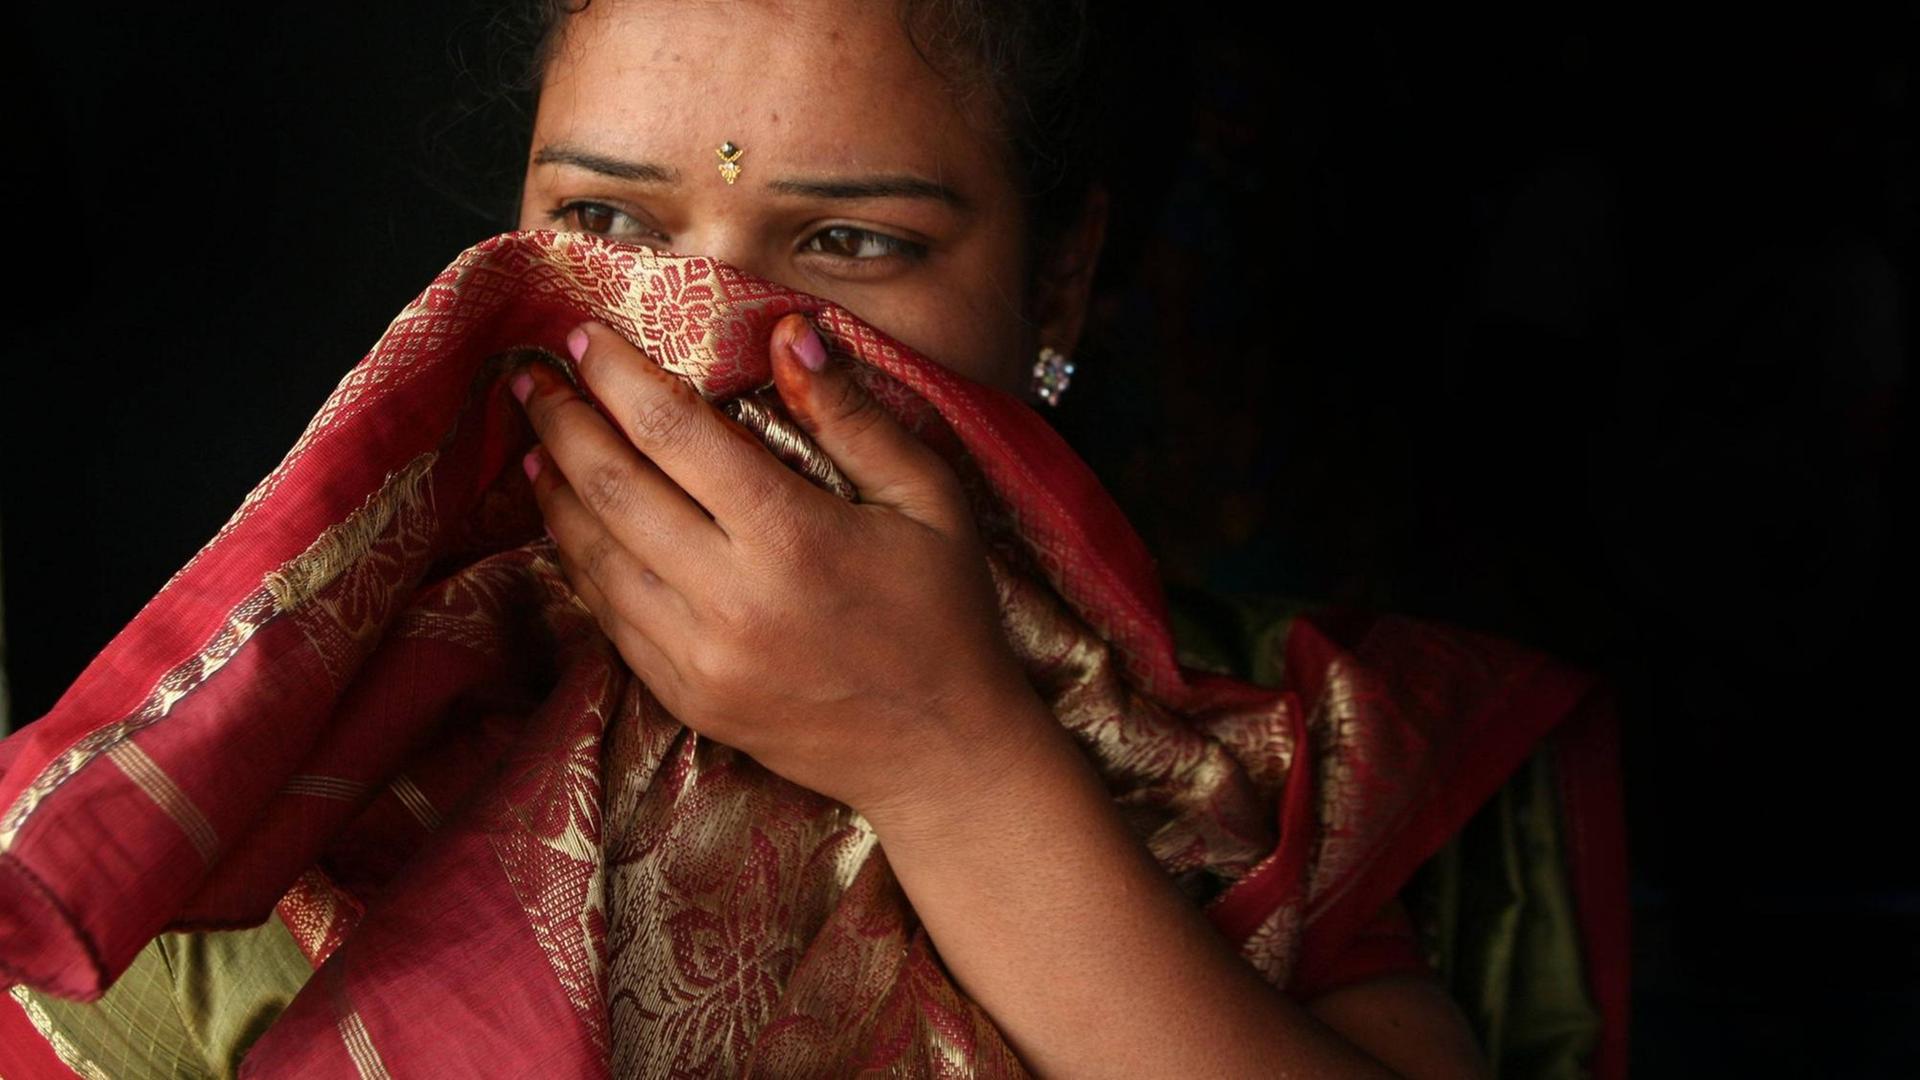 Portrait einer indischen Frau deren Gesicht teilweise von einem Tuch bedeckt ist